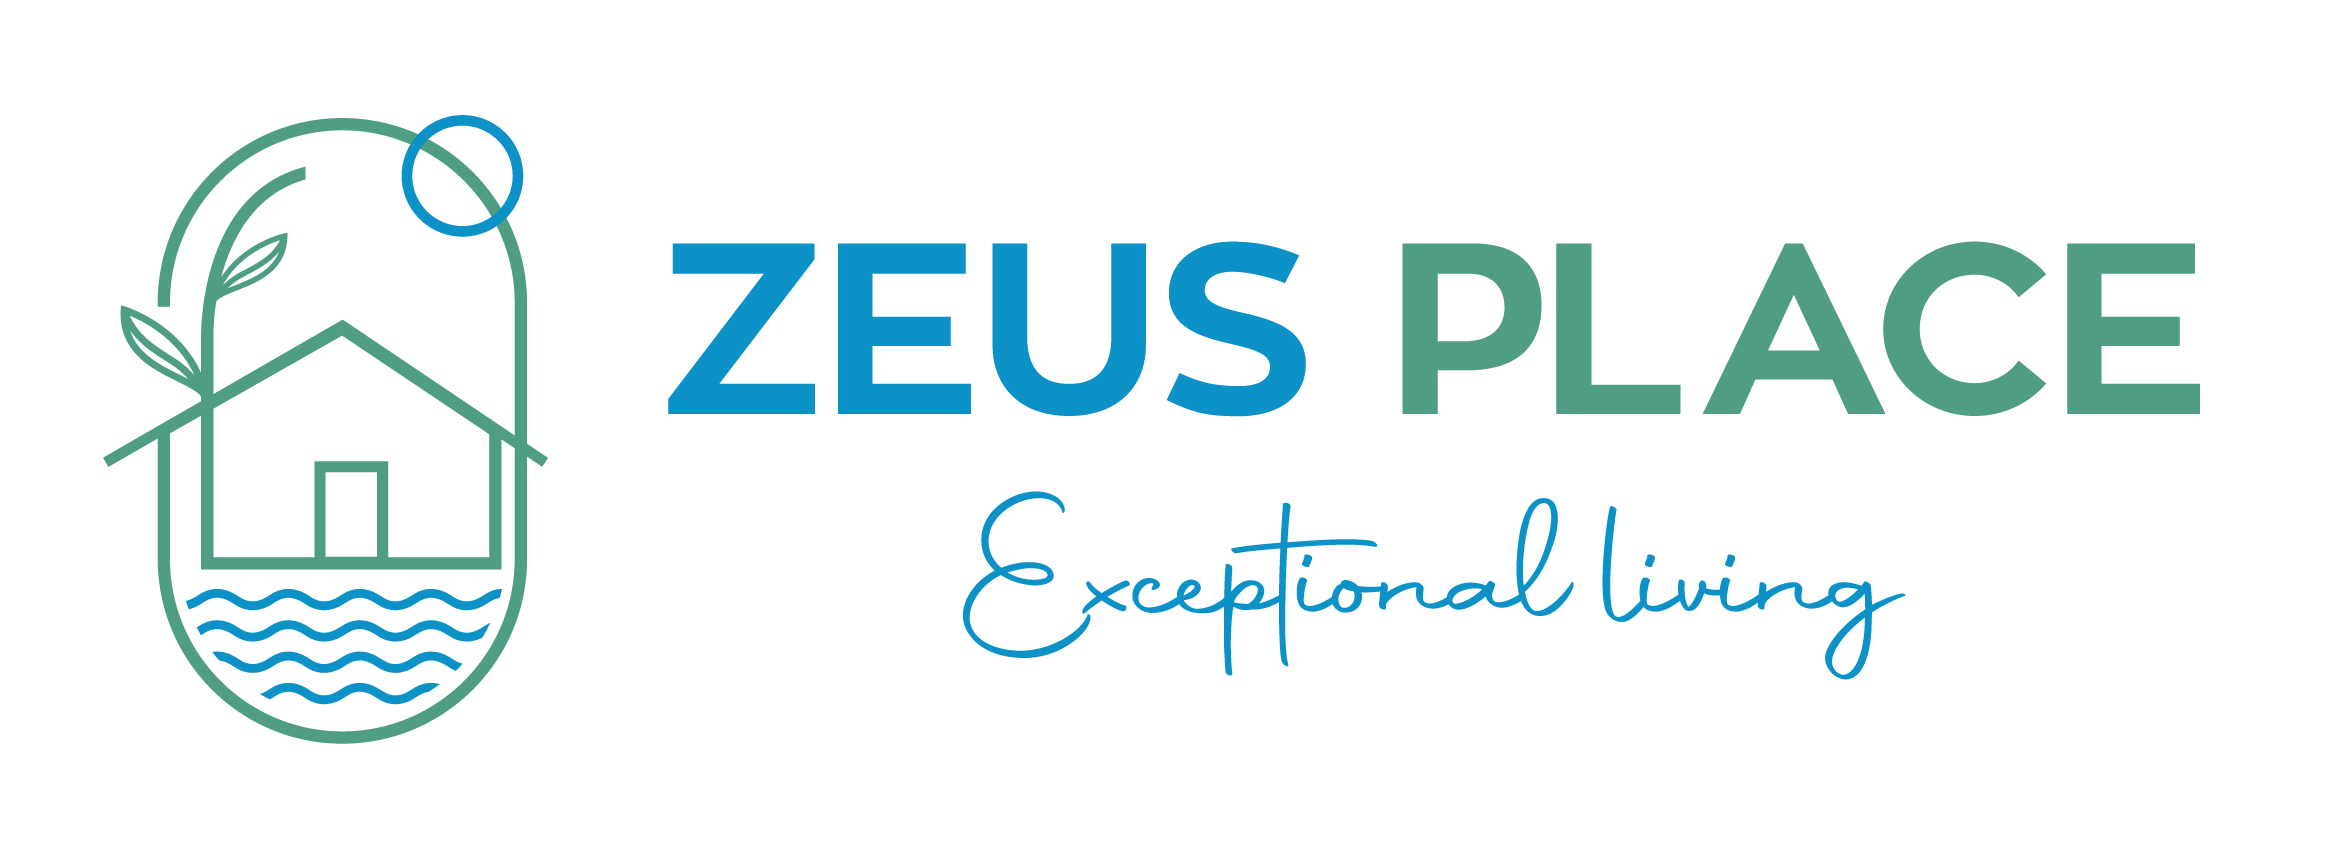 Zeus Place | Exceptional Living